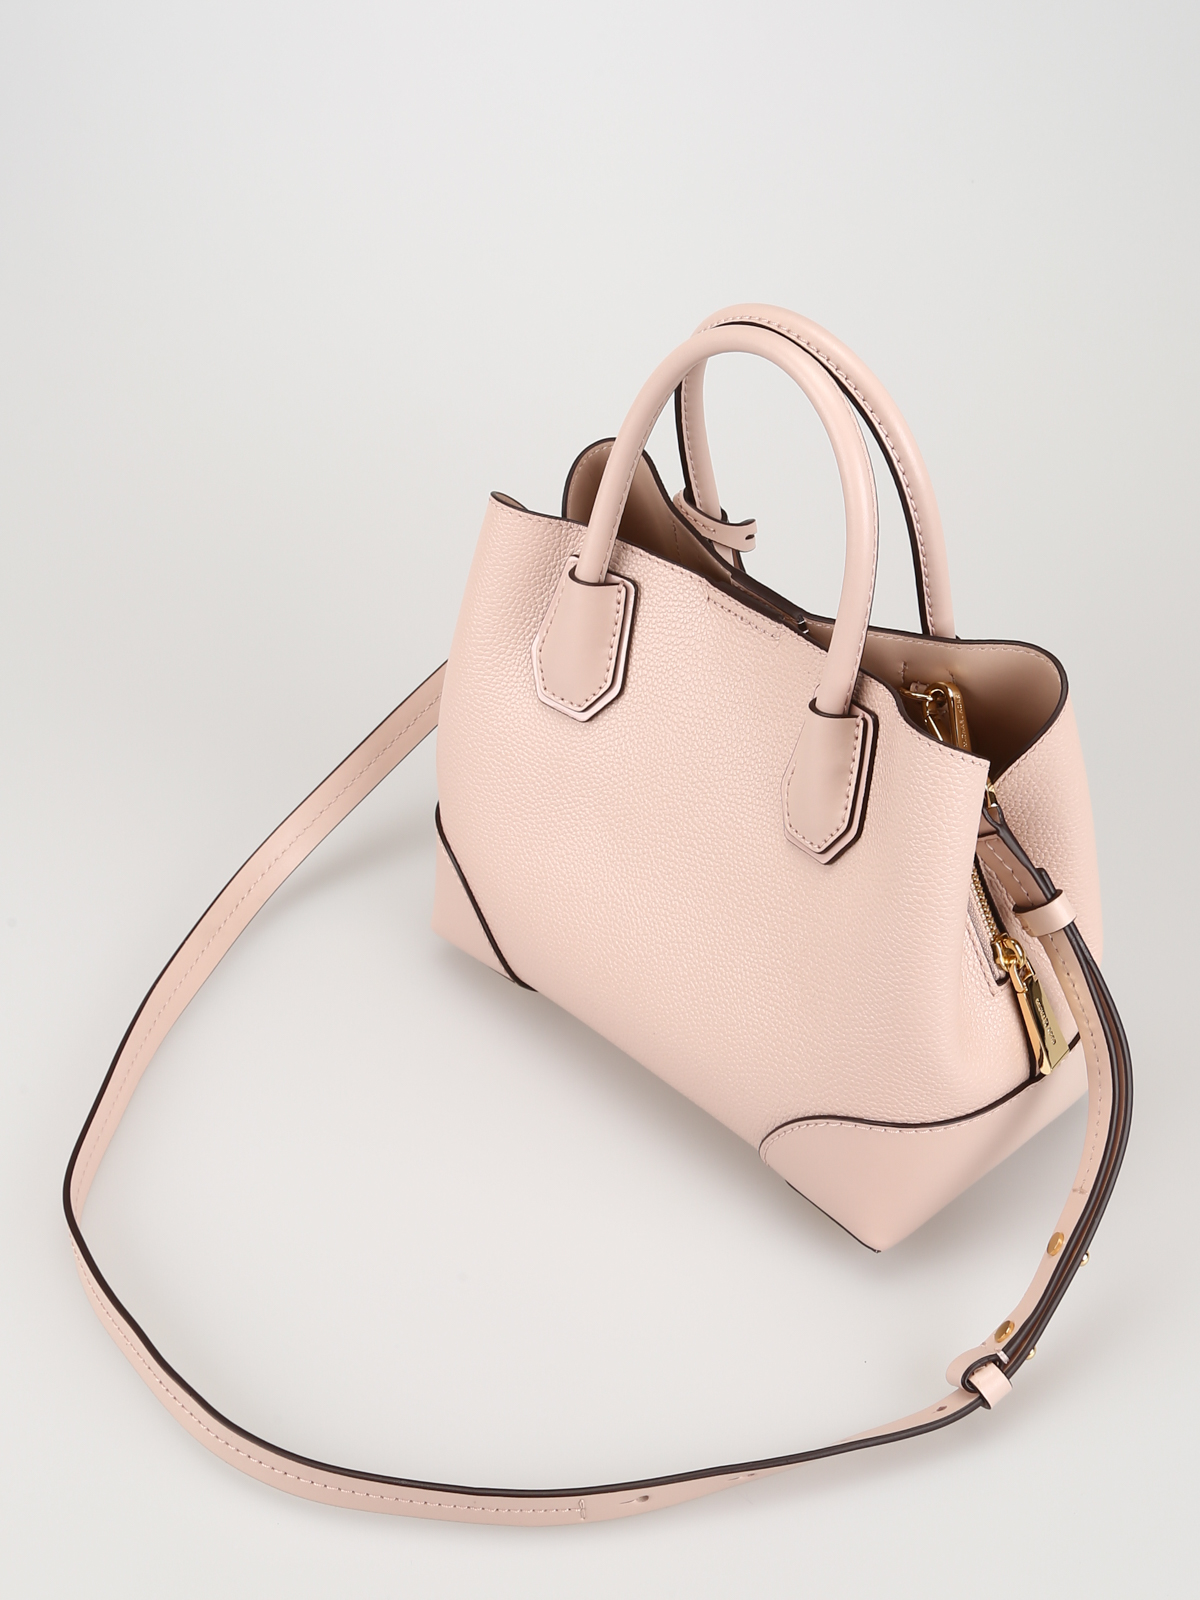 Cross body bags Michael Kors - Mercer M light pink leather bag